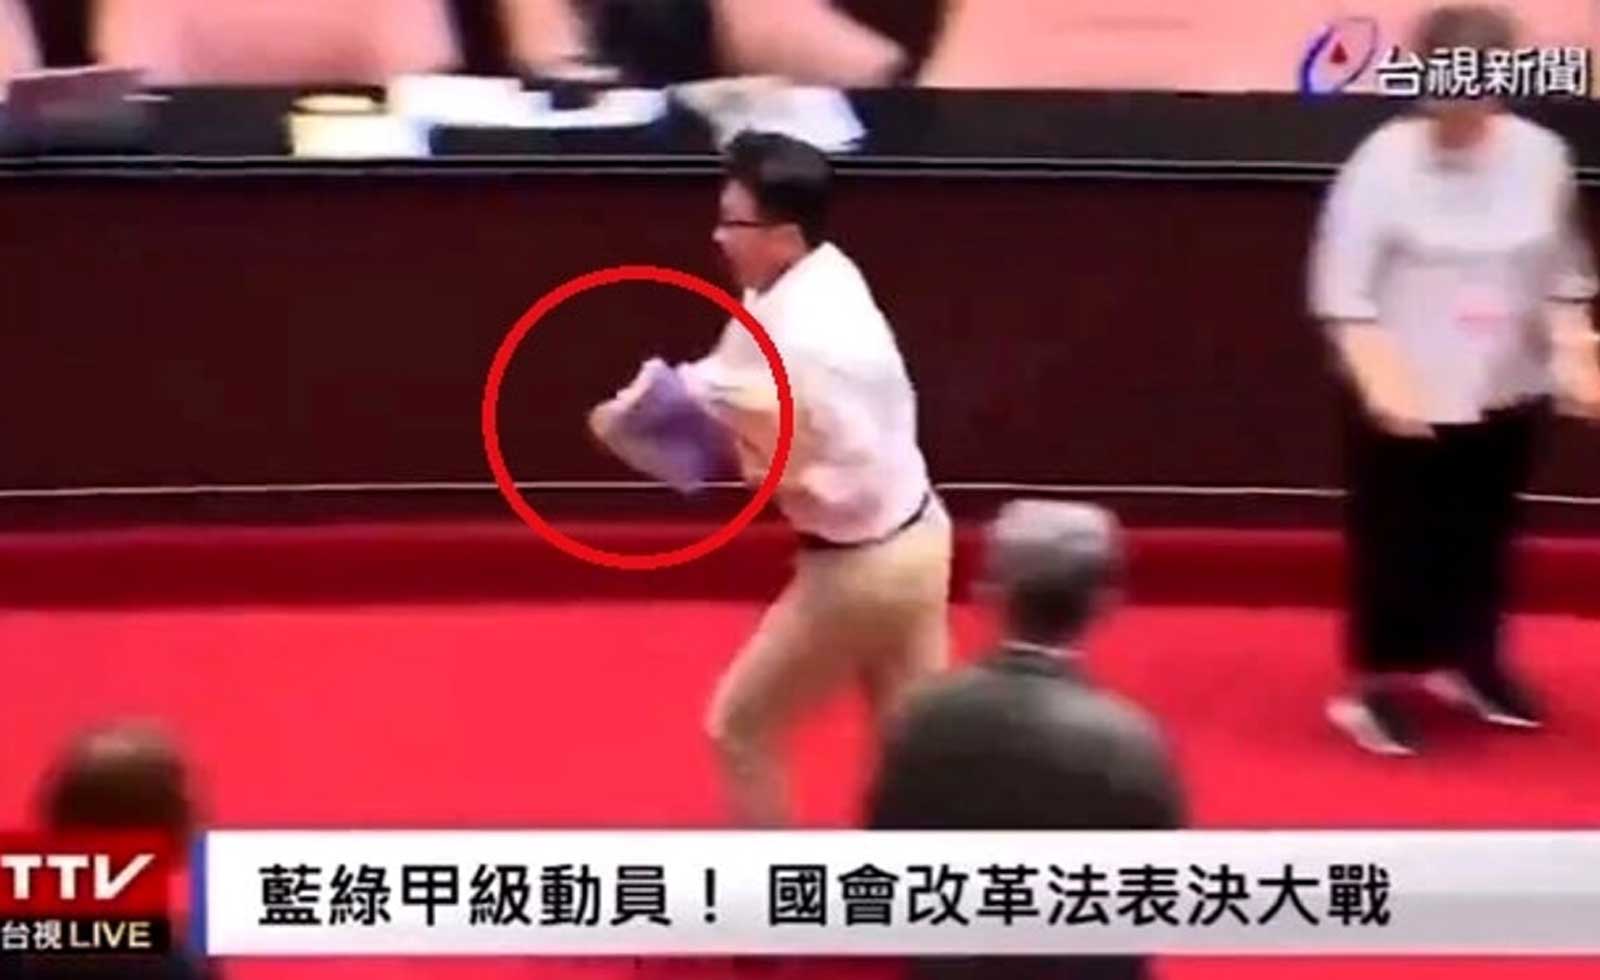 Il deputato fugge con le schede elettorali